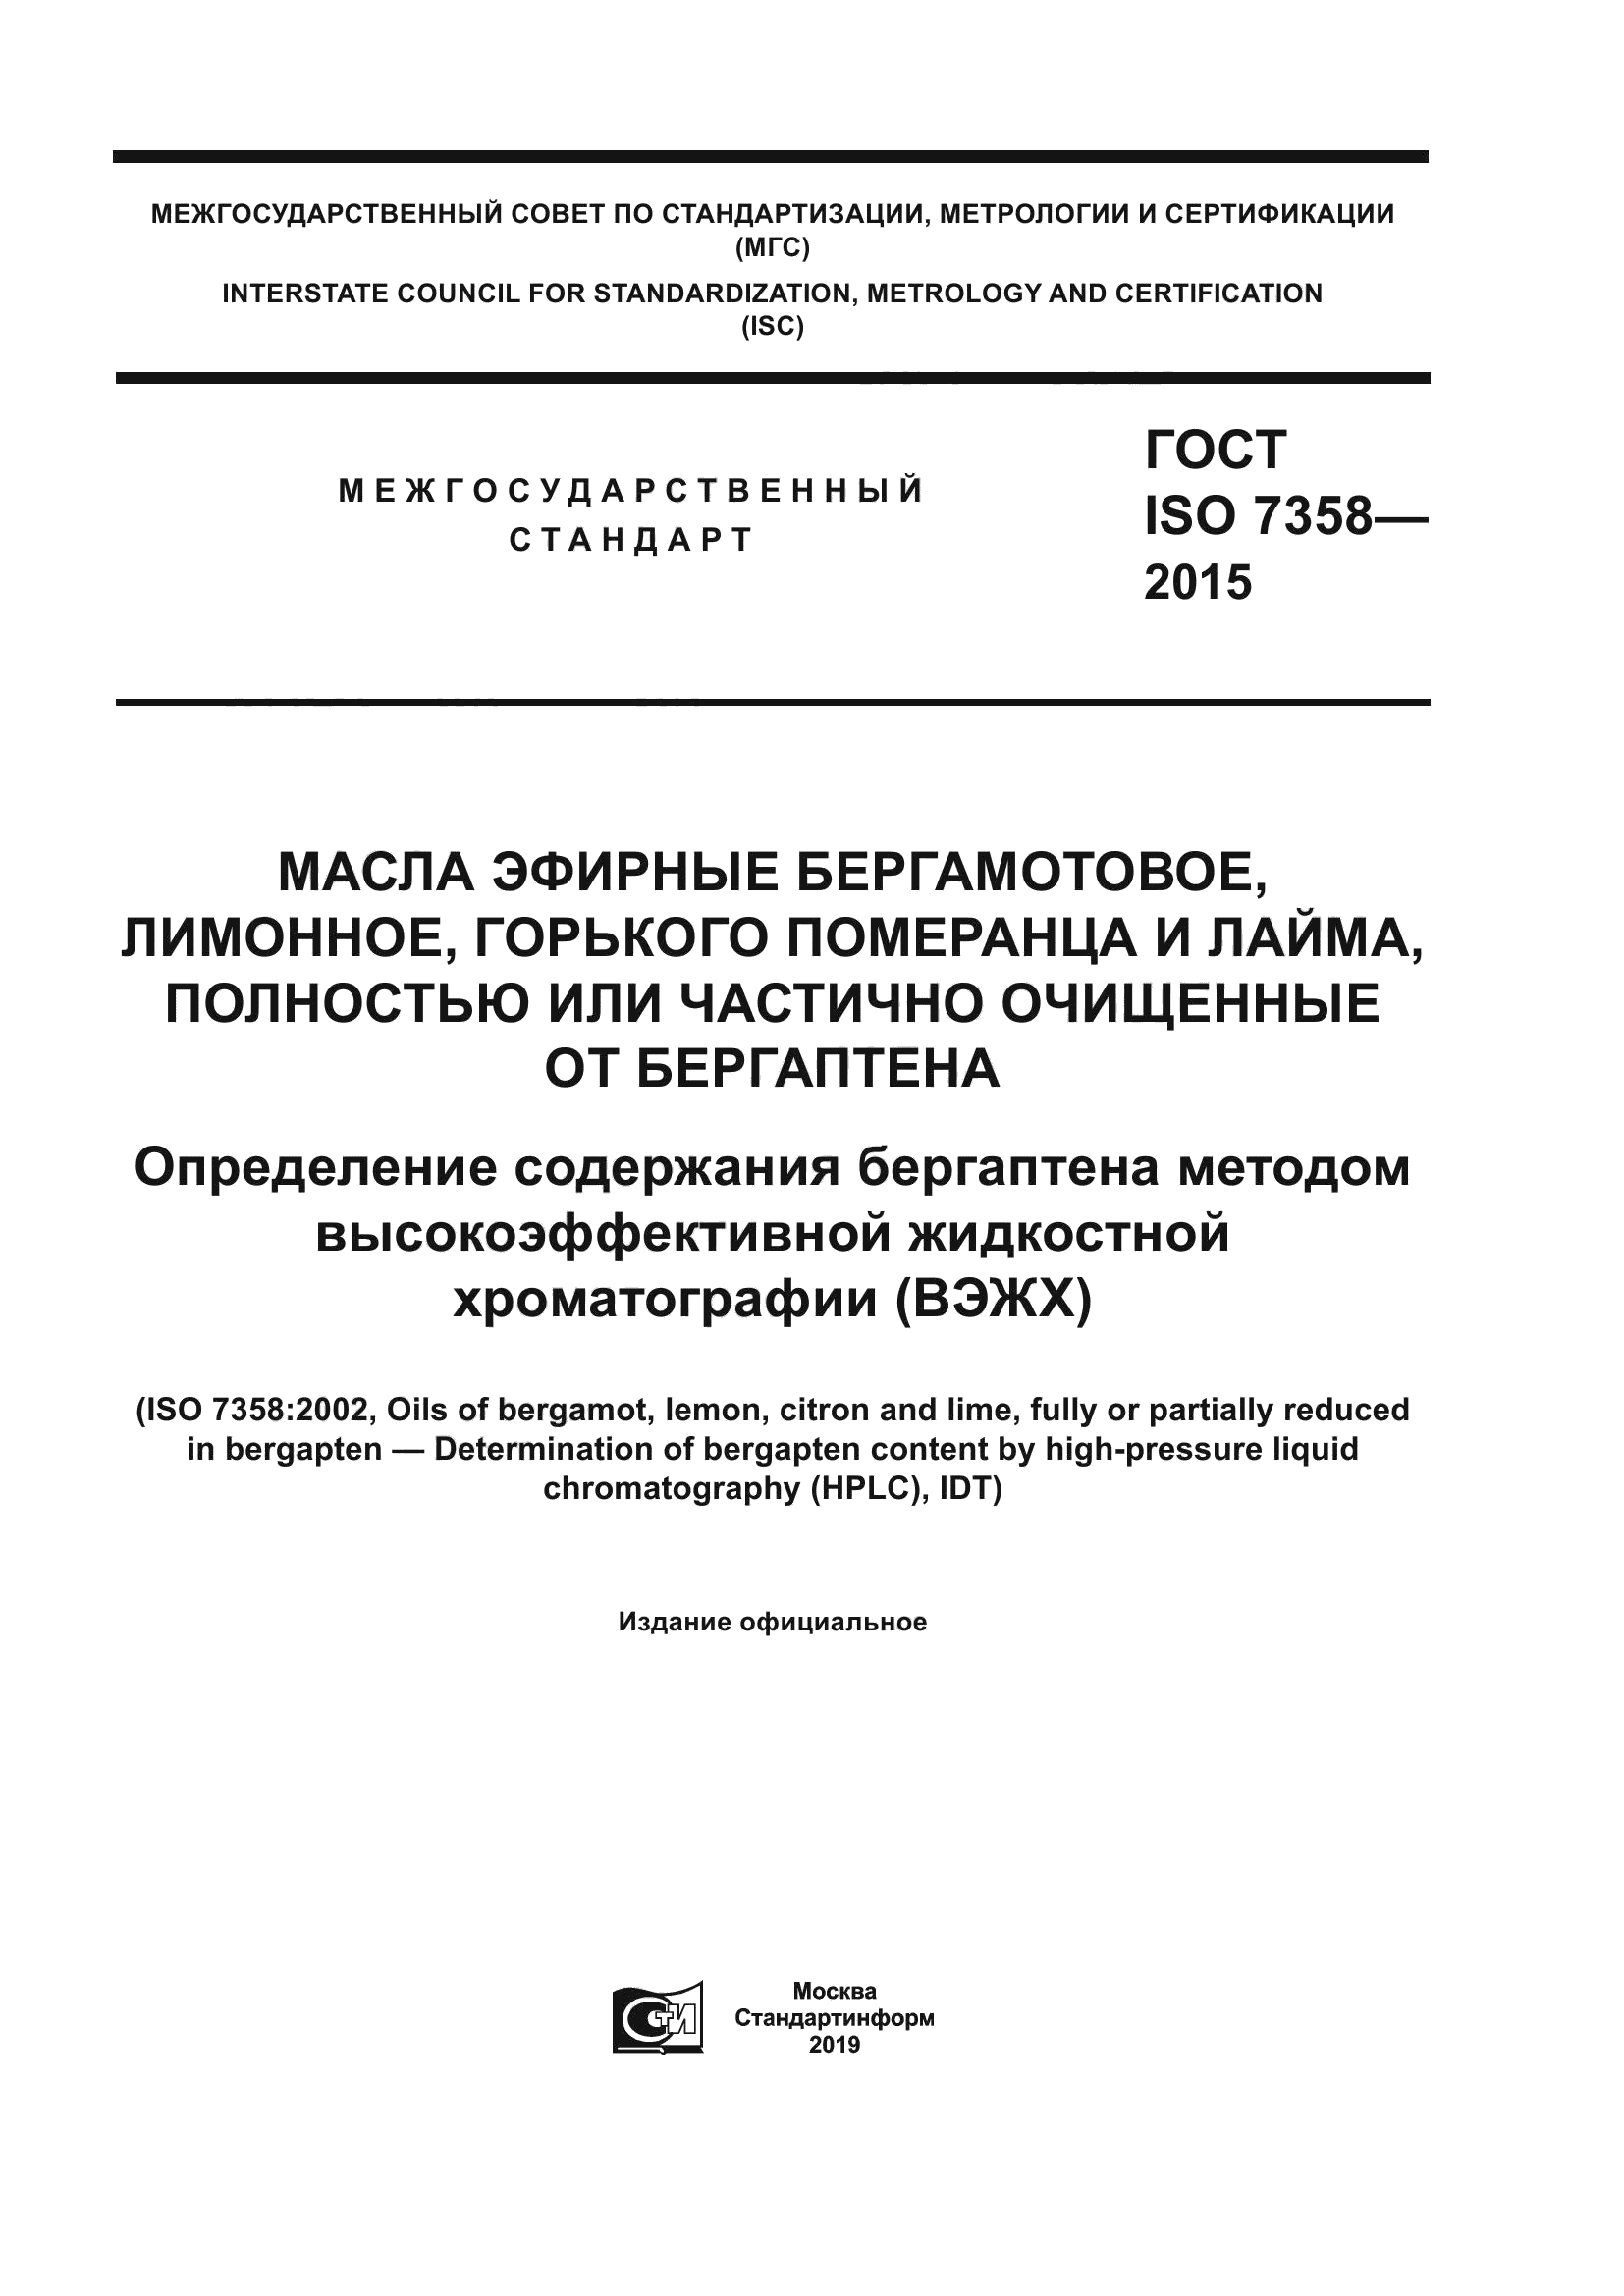 ГОСТ ISO 7358-2015